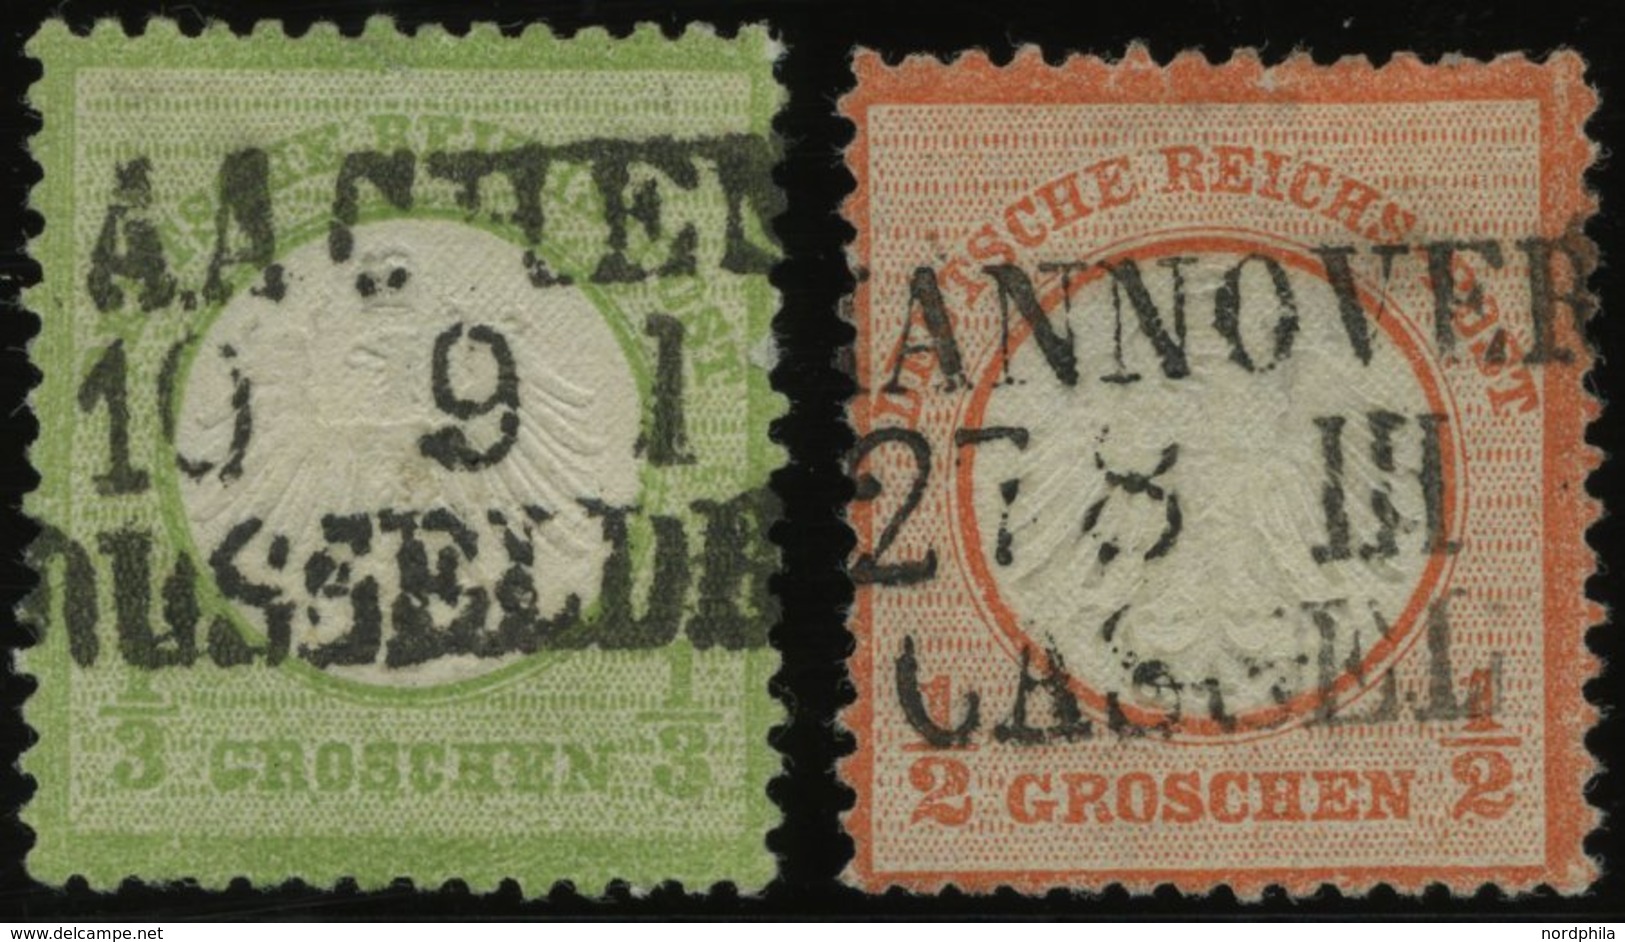 Dt. Reich 2a,3 O, 1872, 1/3 Gr. Gelblichgrün Und 1/2 Gr. Ziegelrot Mit Zentrischen L3 AACHEN/DÜSSELDORF Und HANNOVER/CAS - Used Stamps